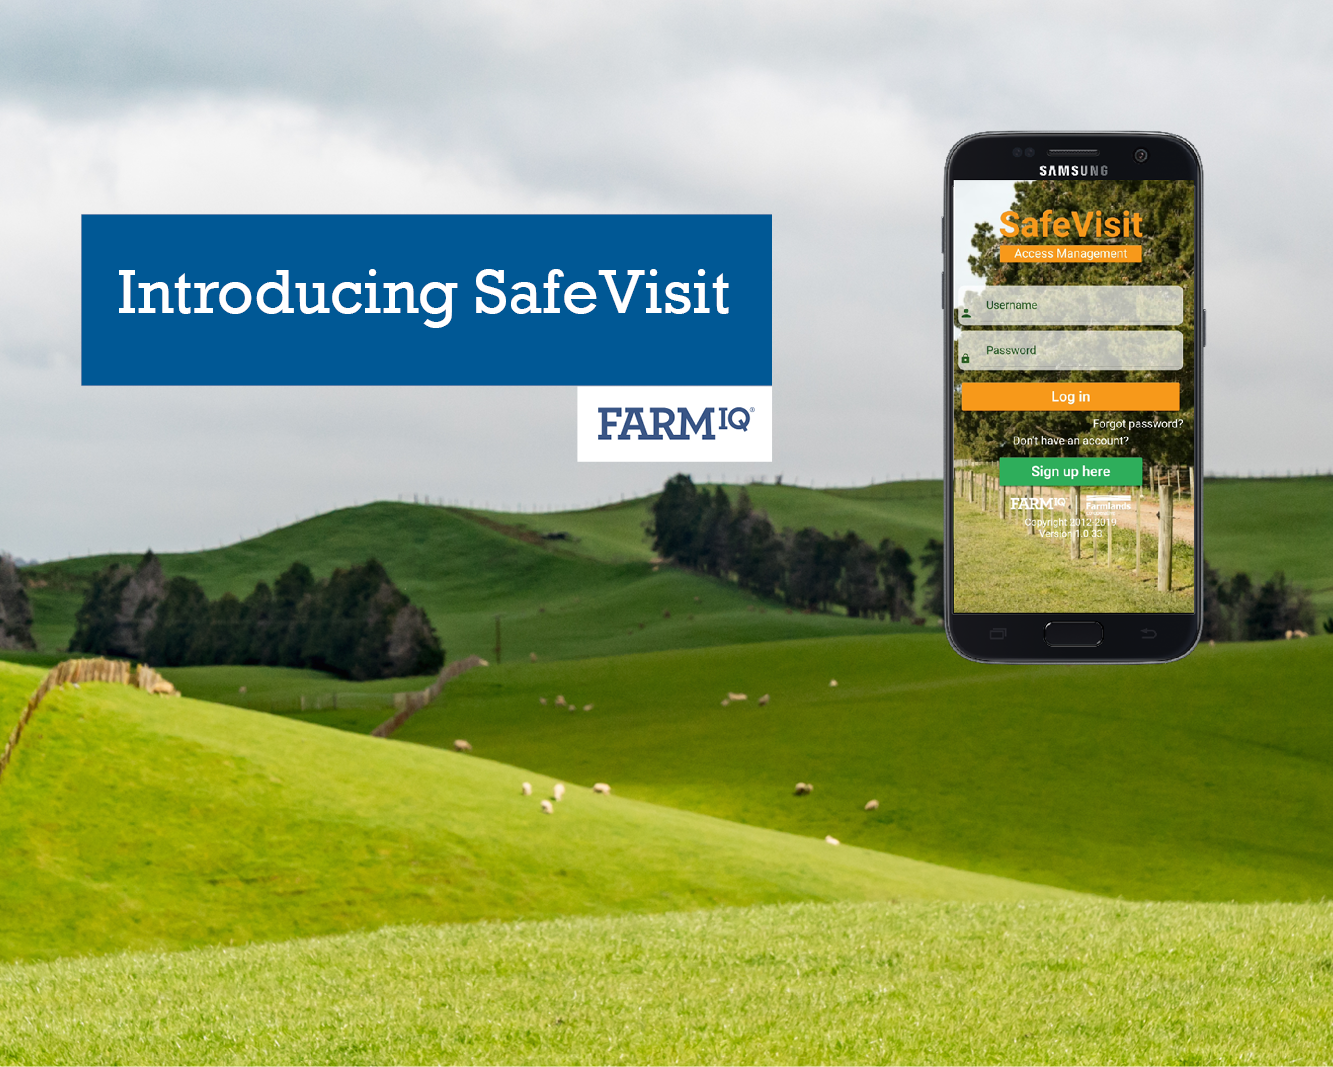 New SafeVisit app improves visitor safety